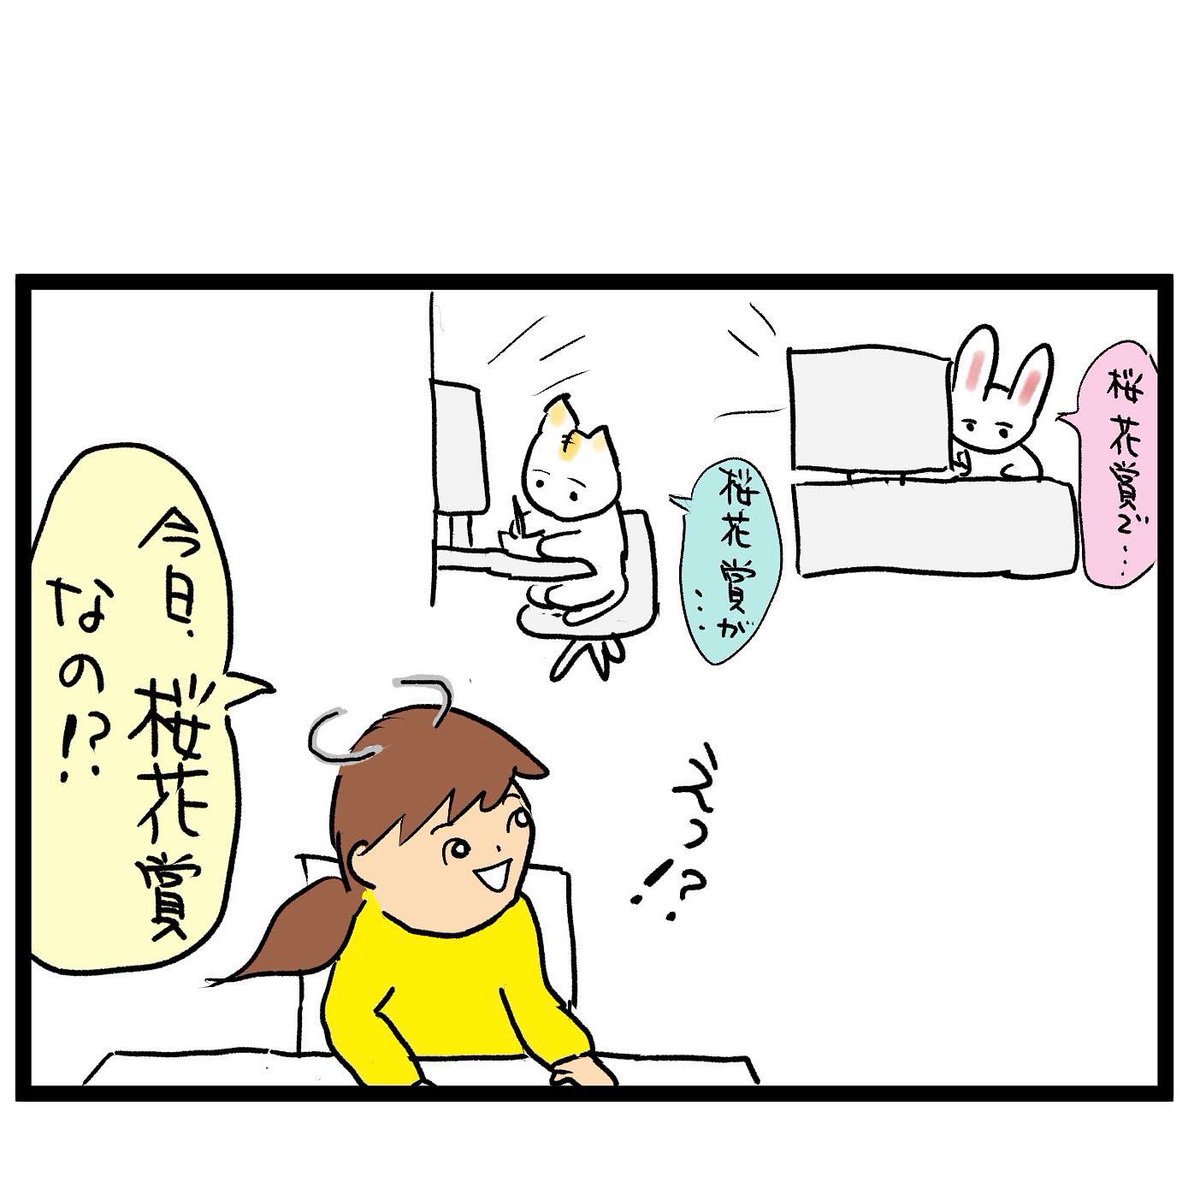 #四コマ漫画
#桜花賞
4位じゃダメなんですか 